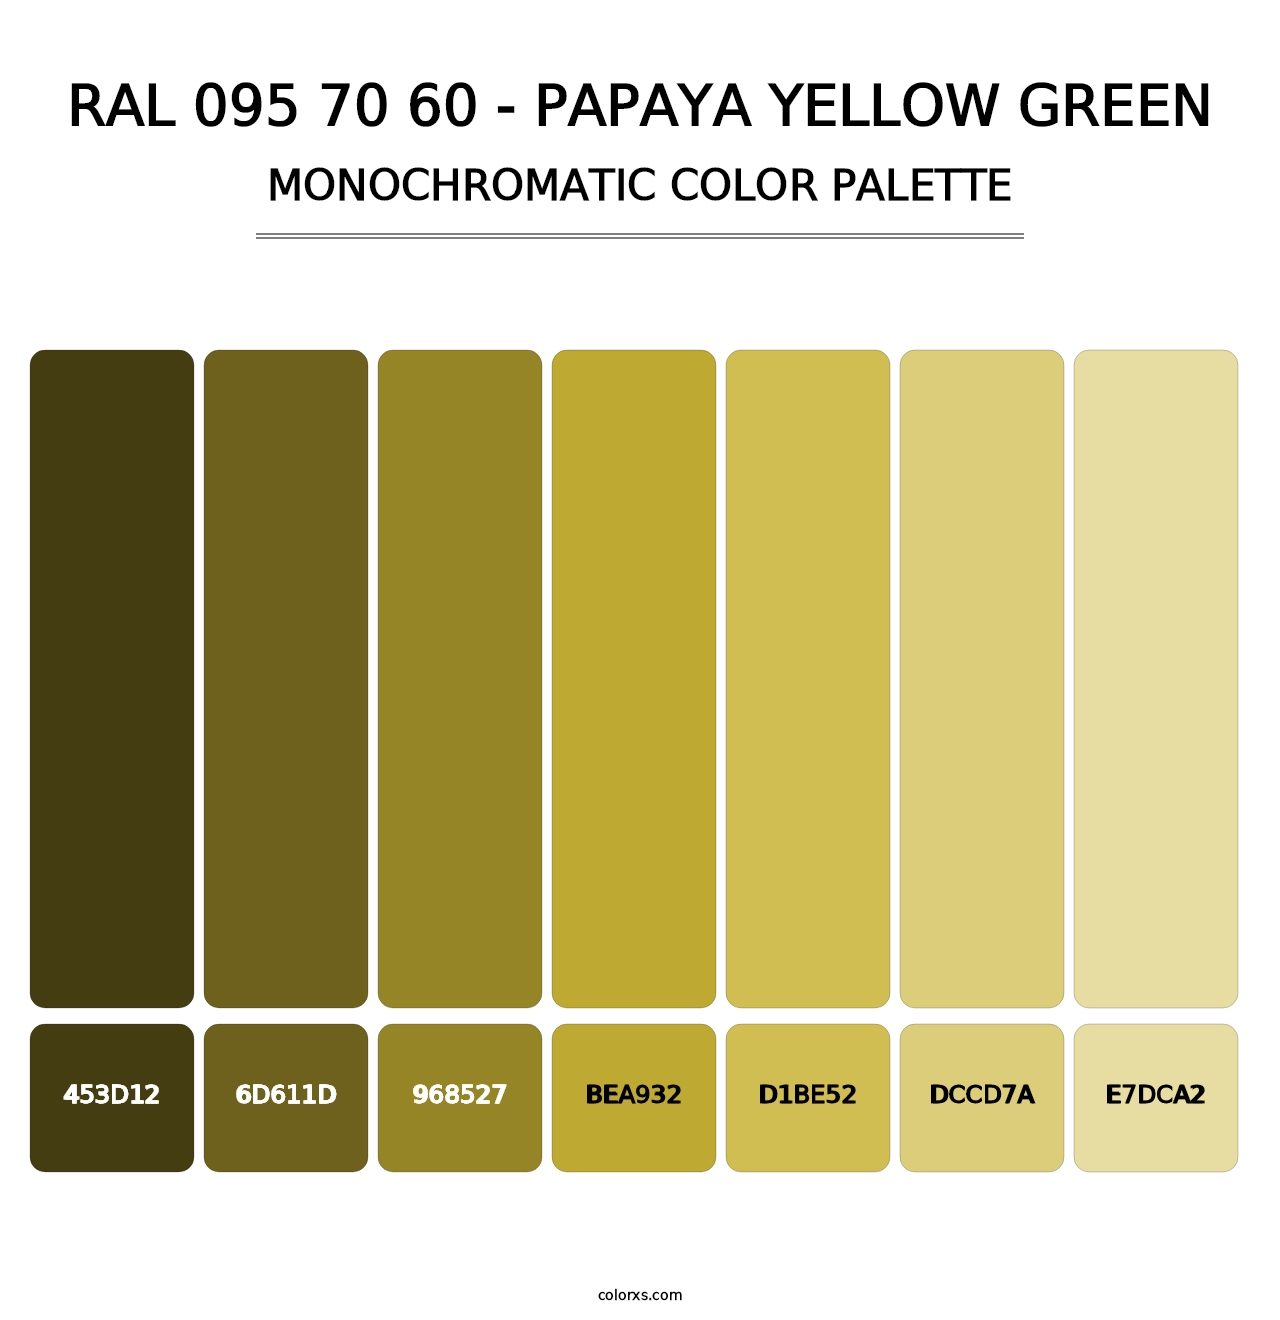 RAL 095 70 60 - Papaya Yellow Green - Monochromatic Color Palette